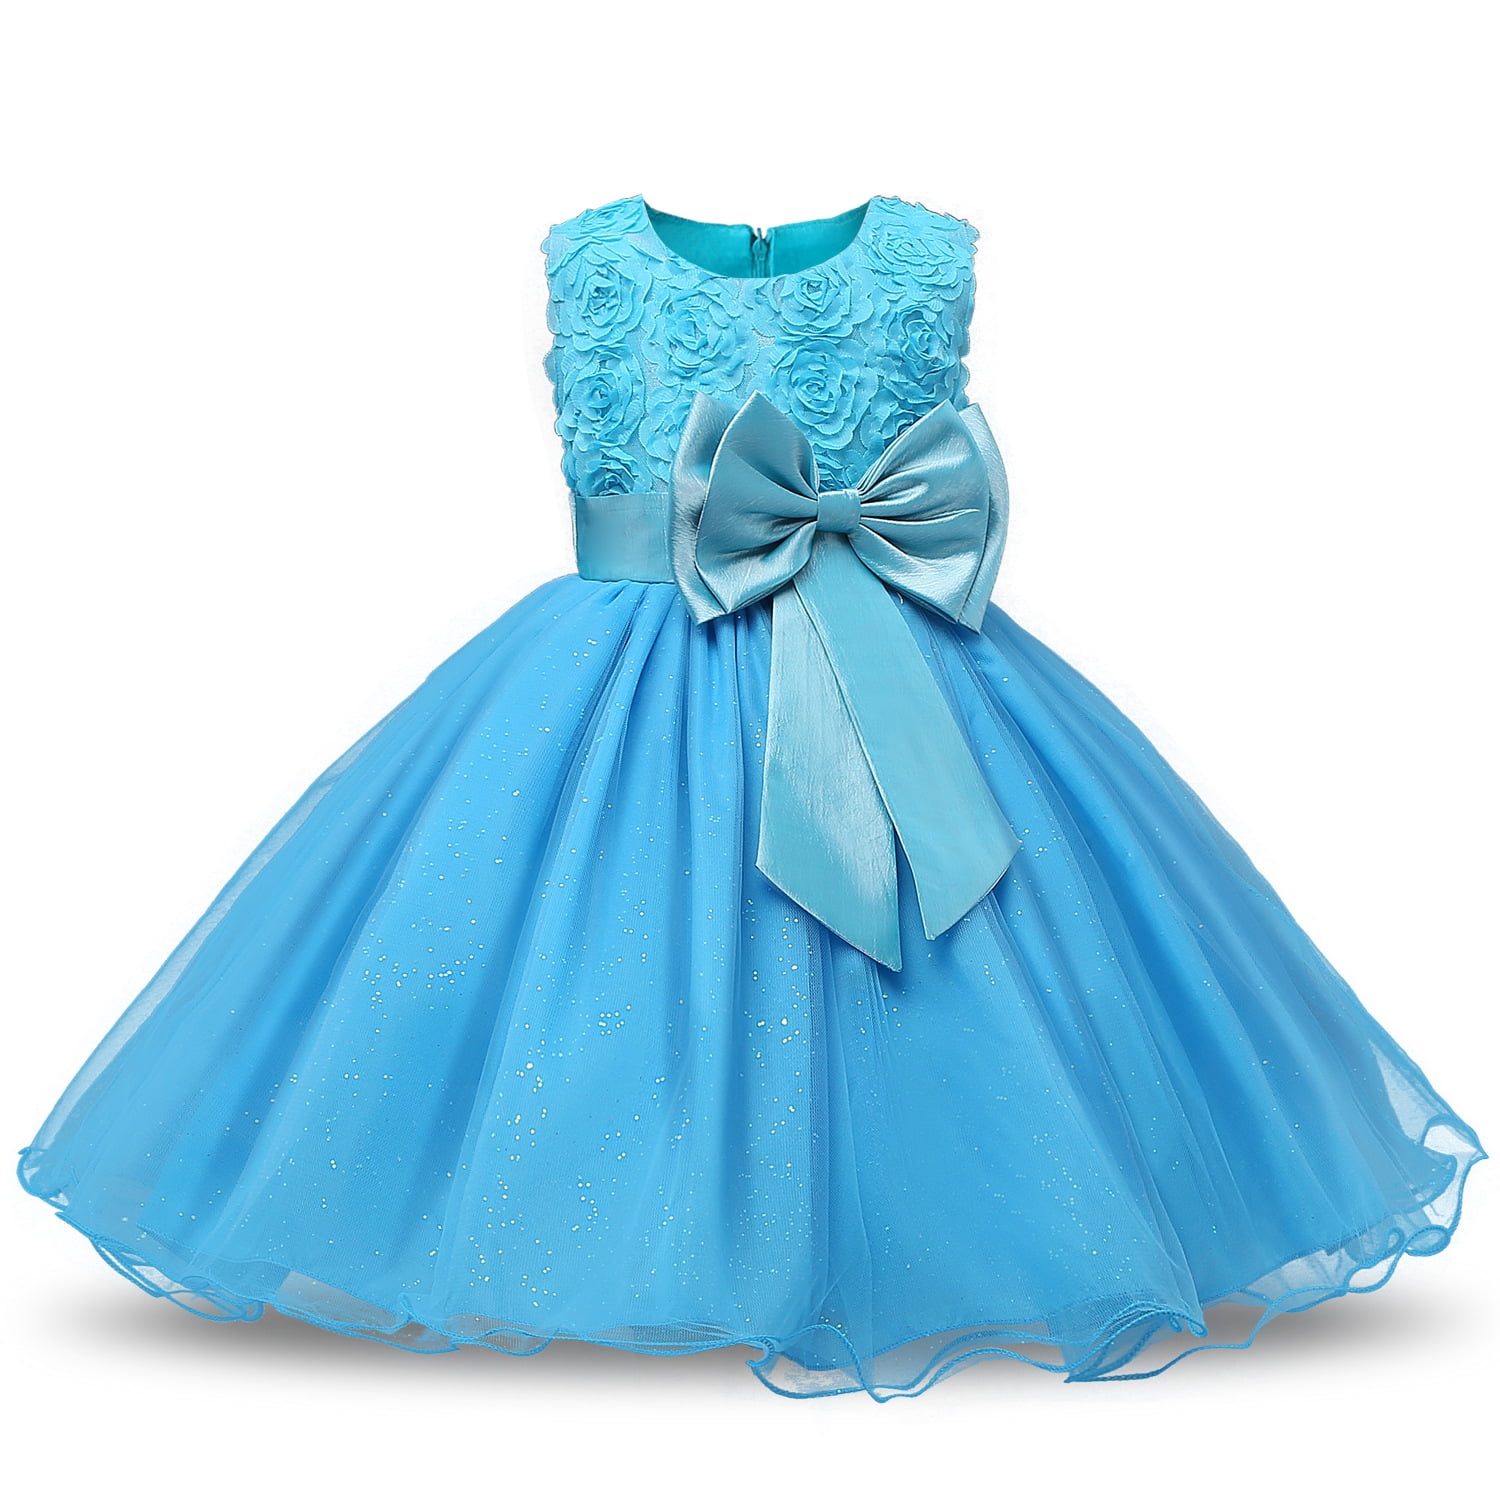 Fomann - Girls Dress Kids Mesh Flower Dress Children's Lace Ball Gown ...